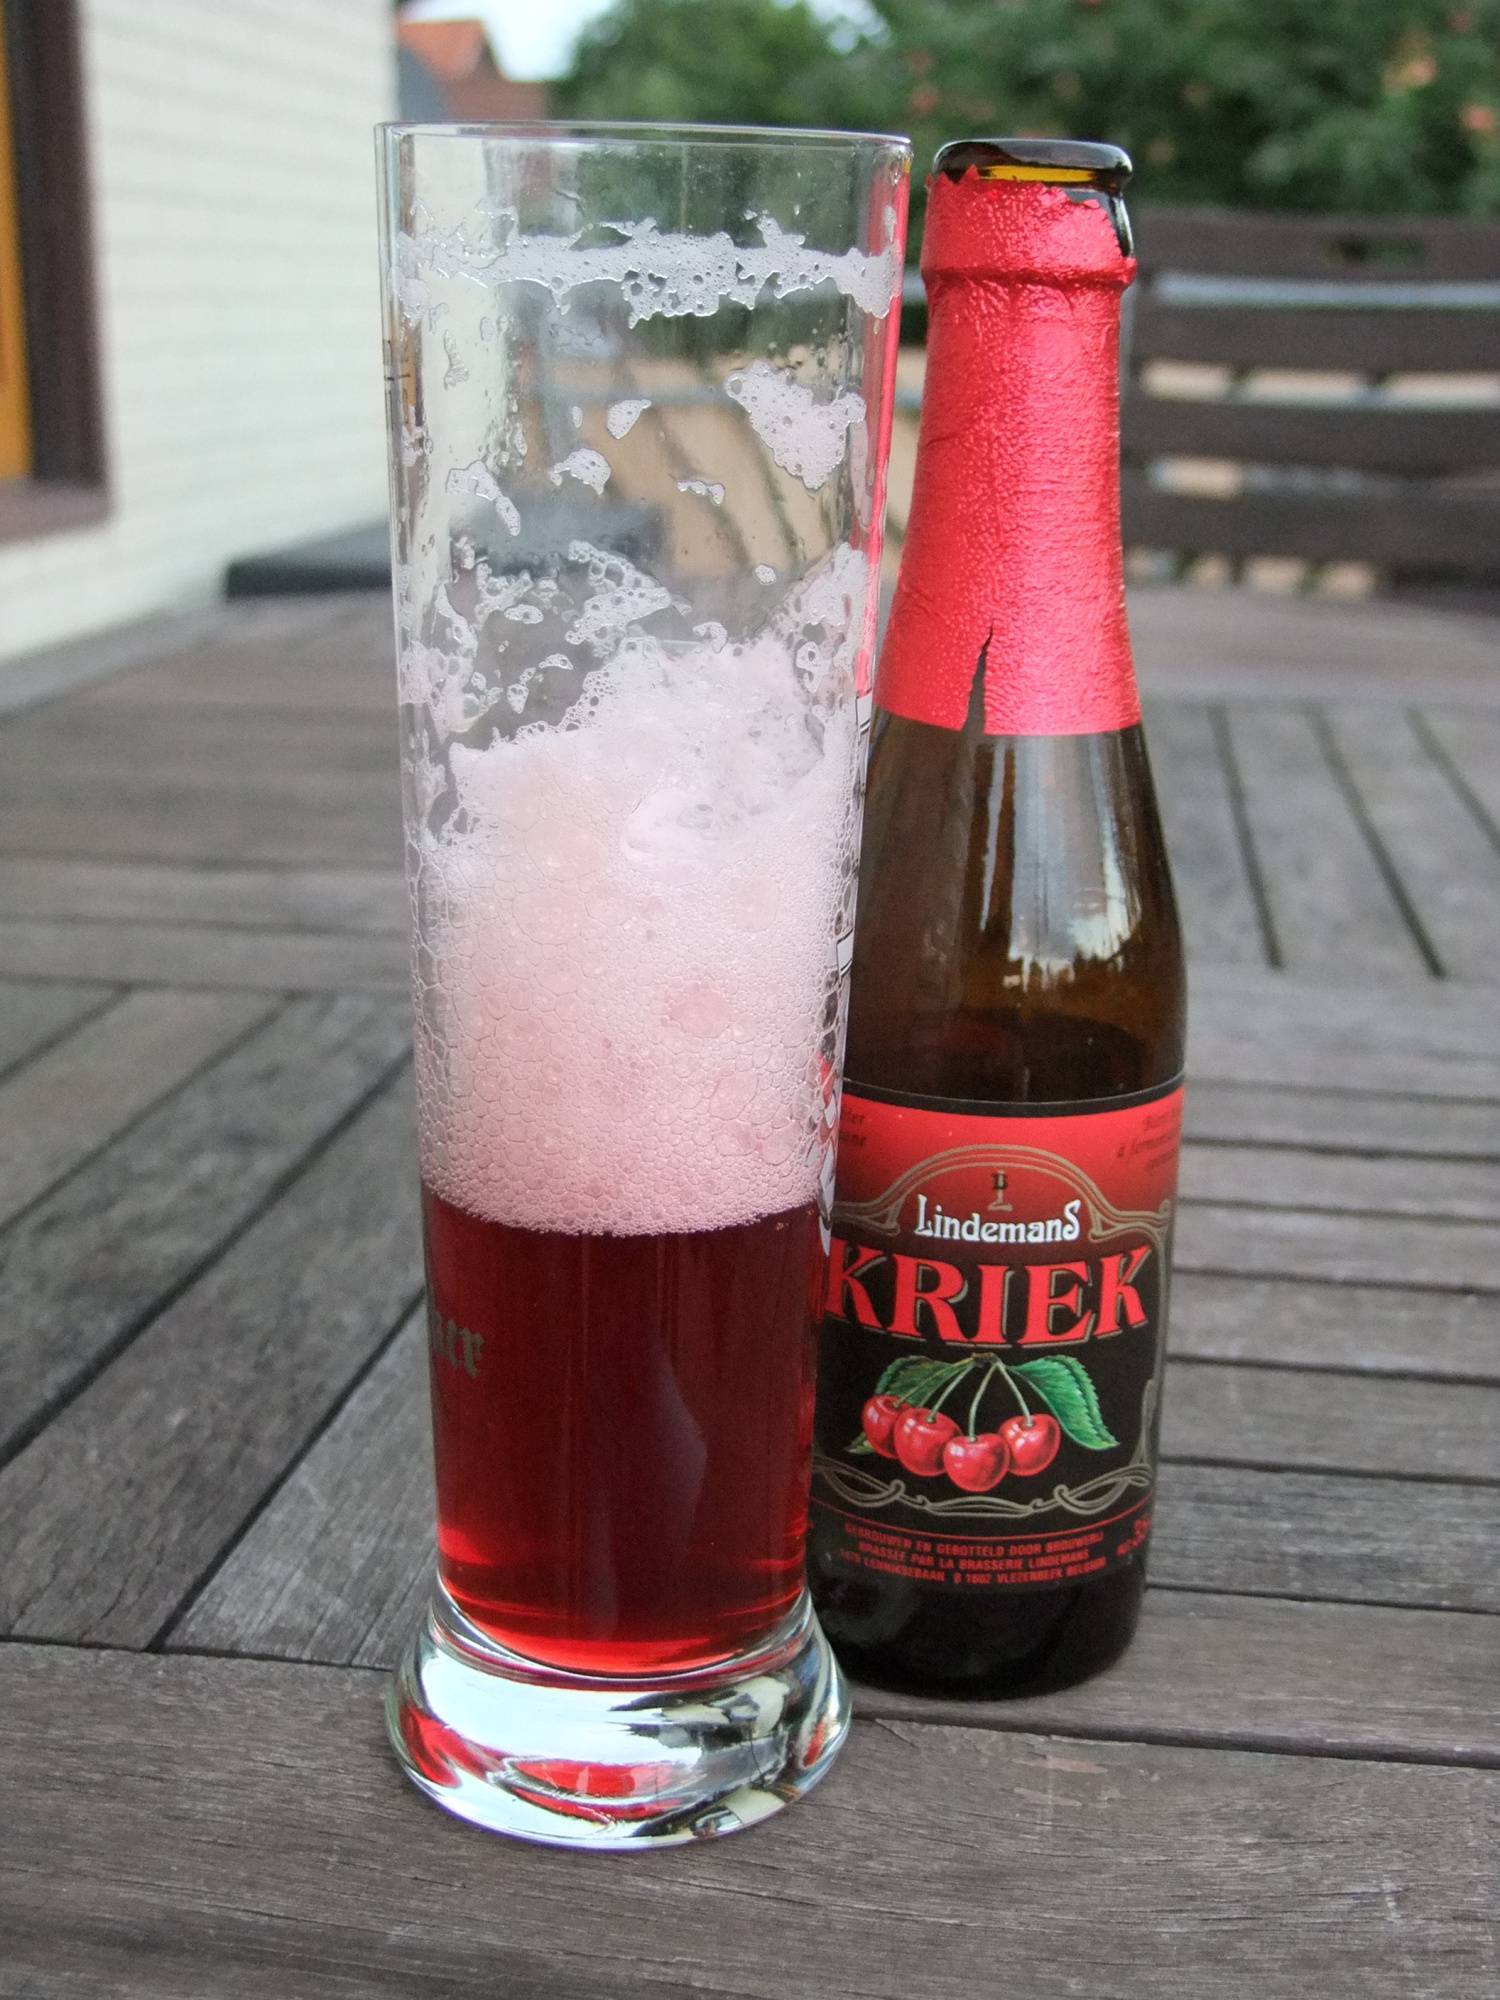 Бельгийское lefebvre belgian kriek это идеальное вишневое пиво